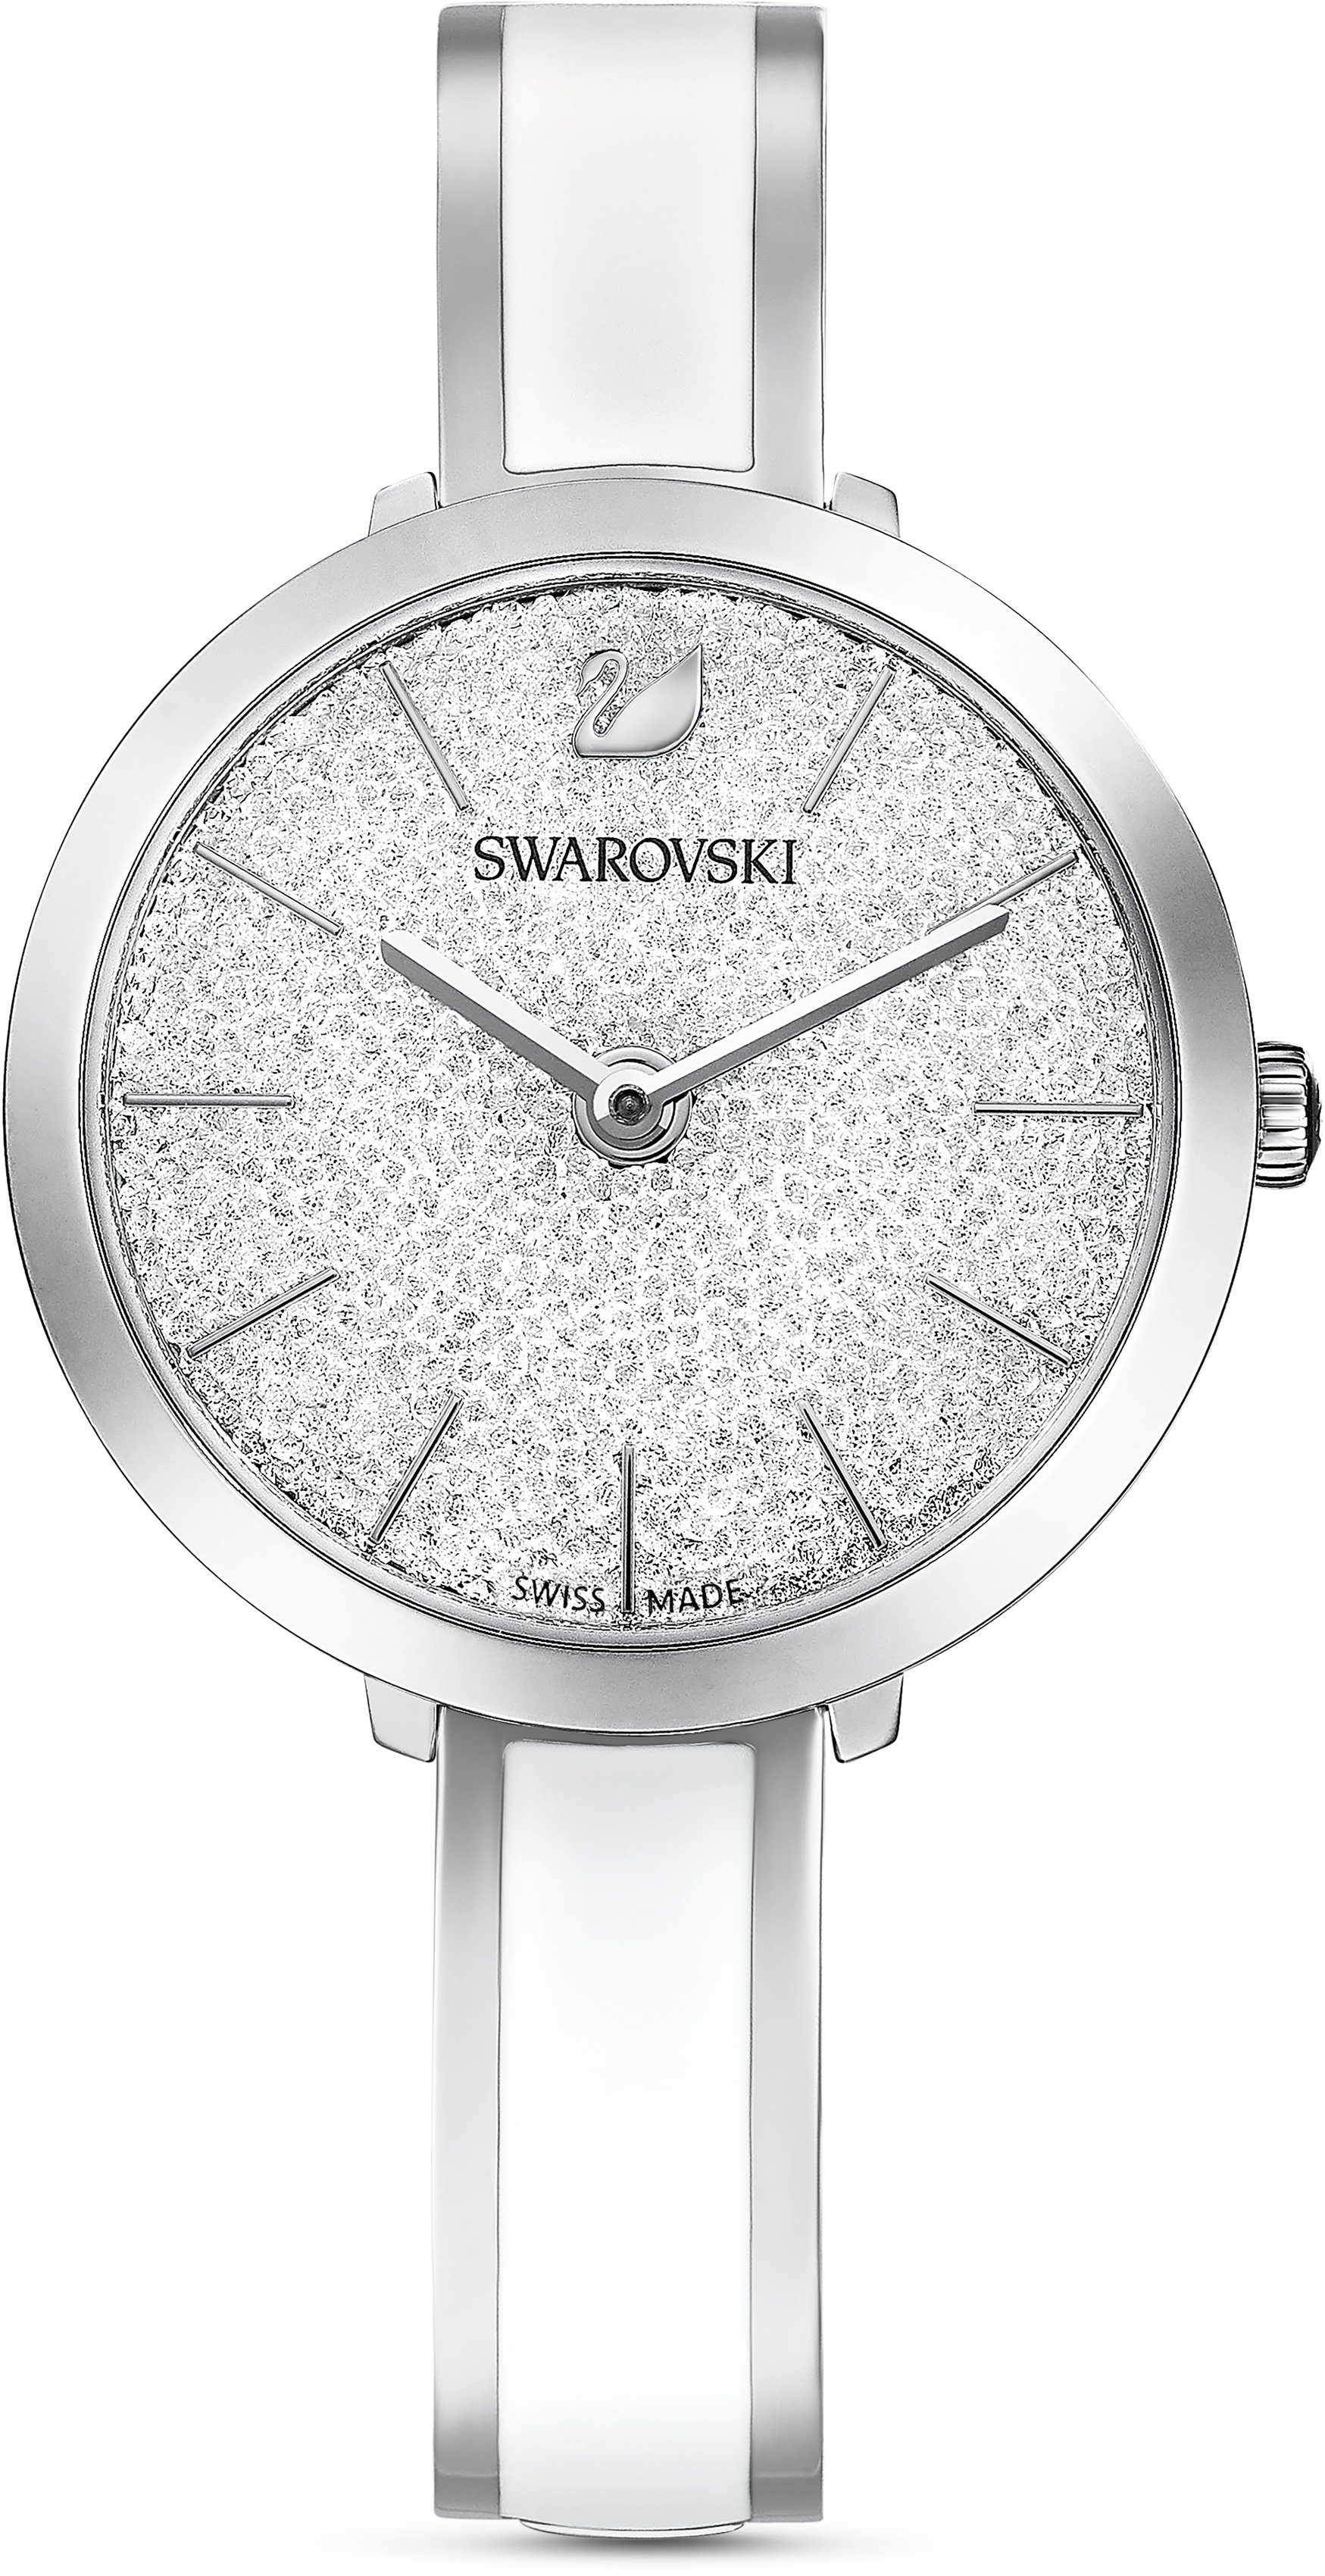 Swarovski Schweizer Uhr Crystalline Delight, 5580537 silber